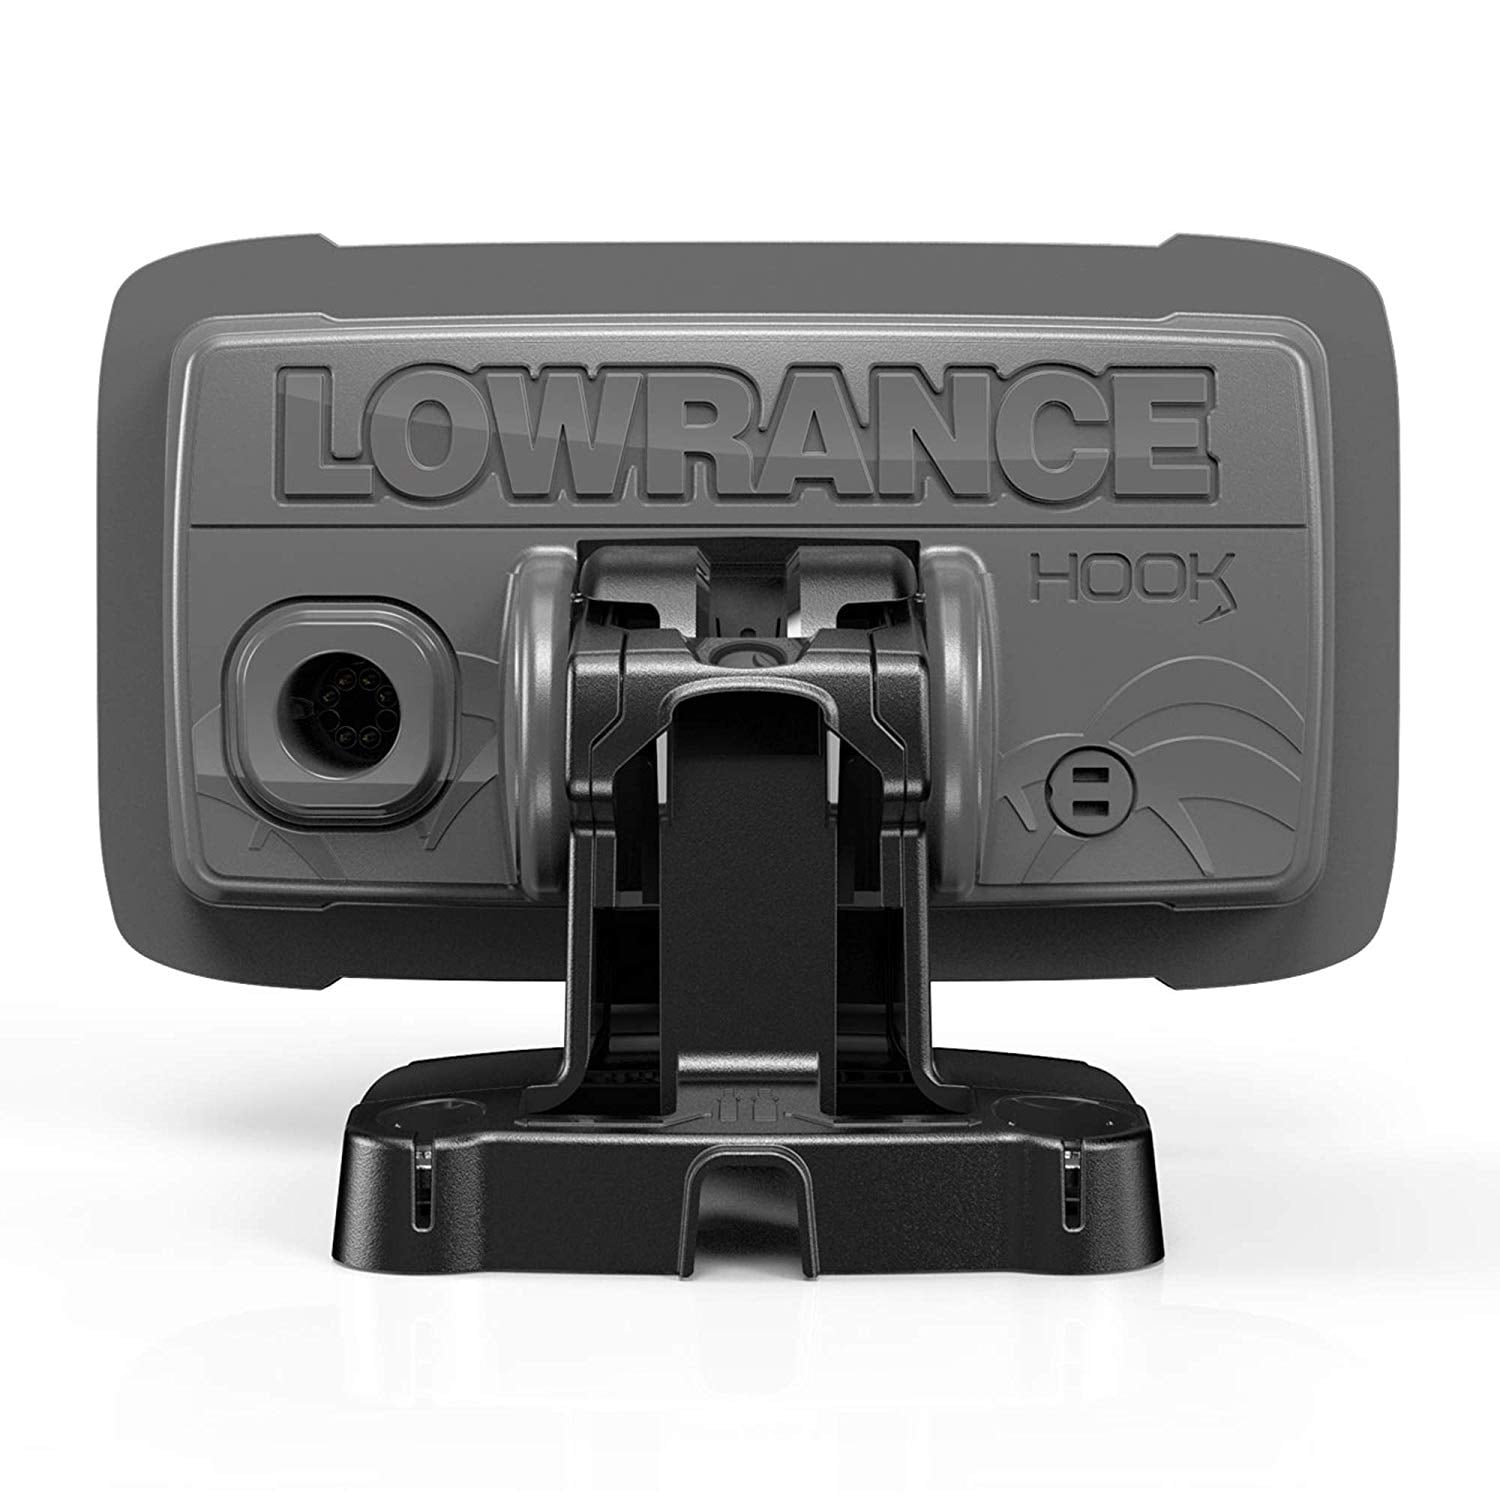 させていた Lowrance Fishfinder with Bullet Transducer and GPS Plotter  :B07YZPR36D:アックス・モール 通販 HOOK2 4X 4